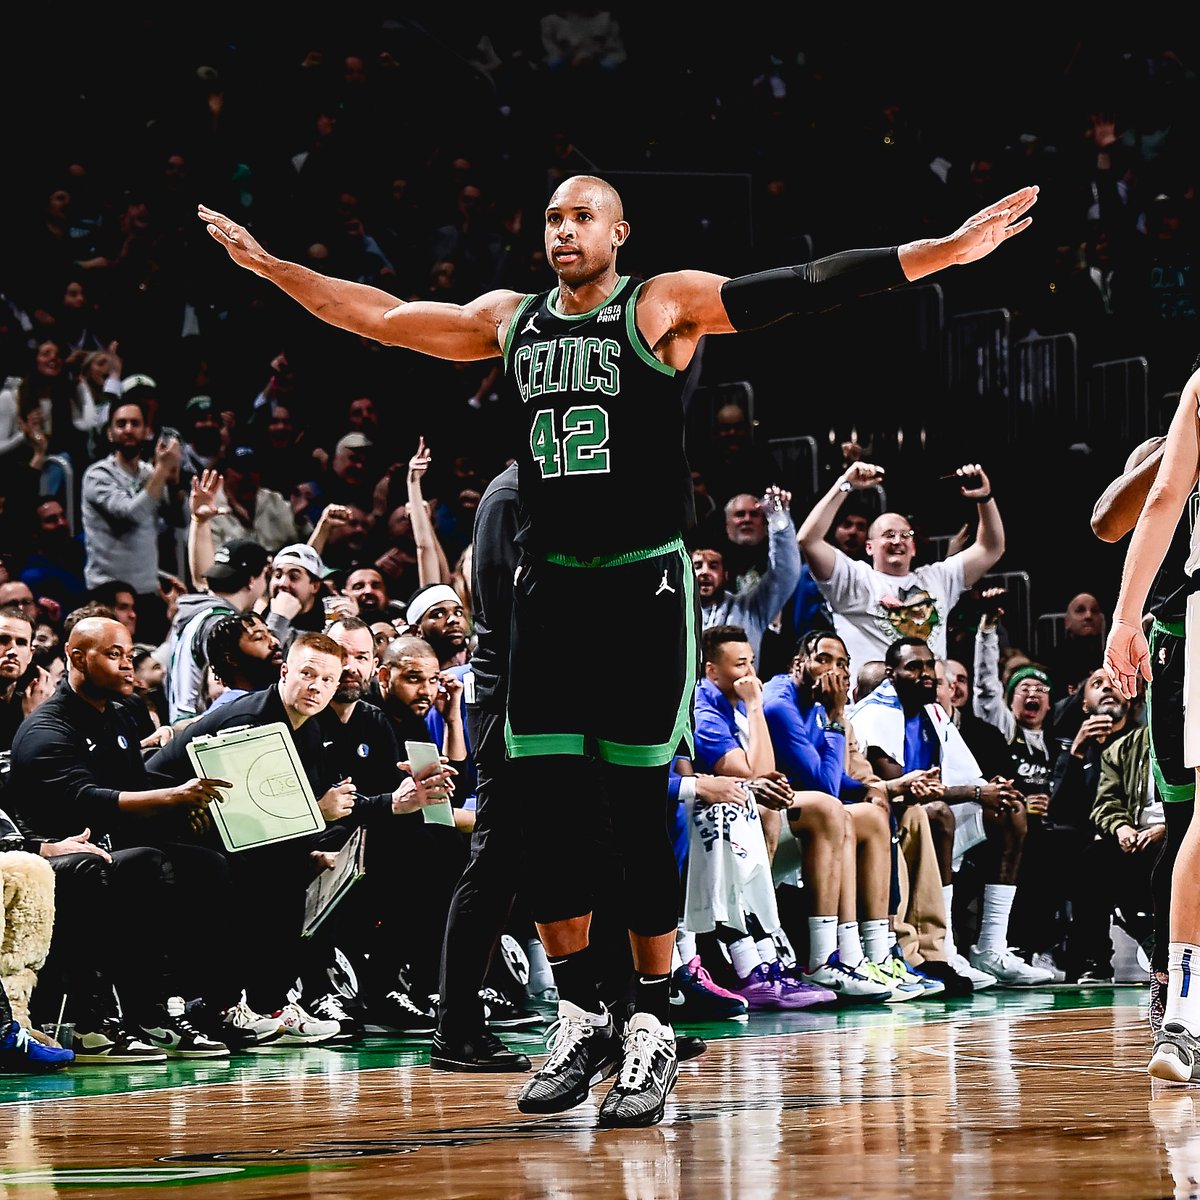 #CelticsWin